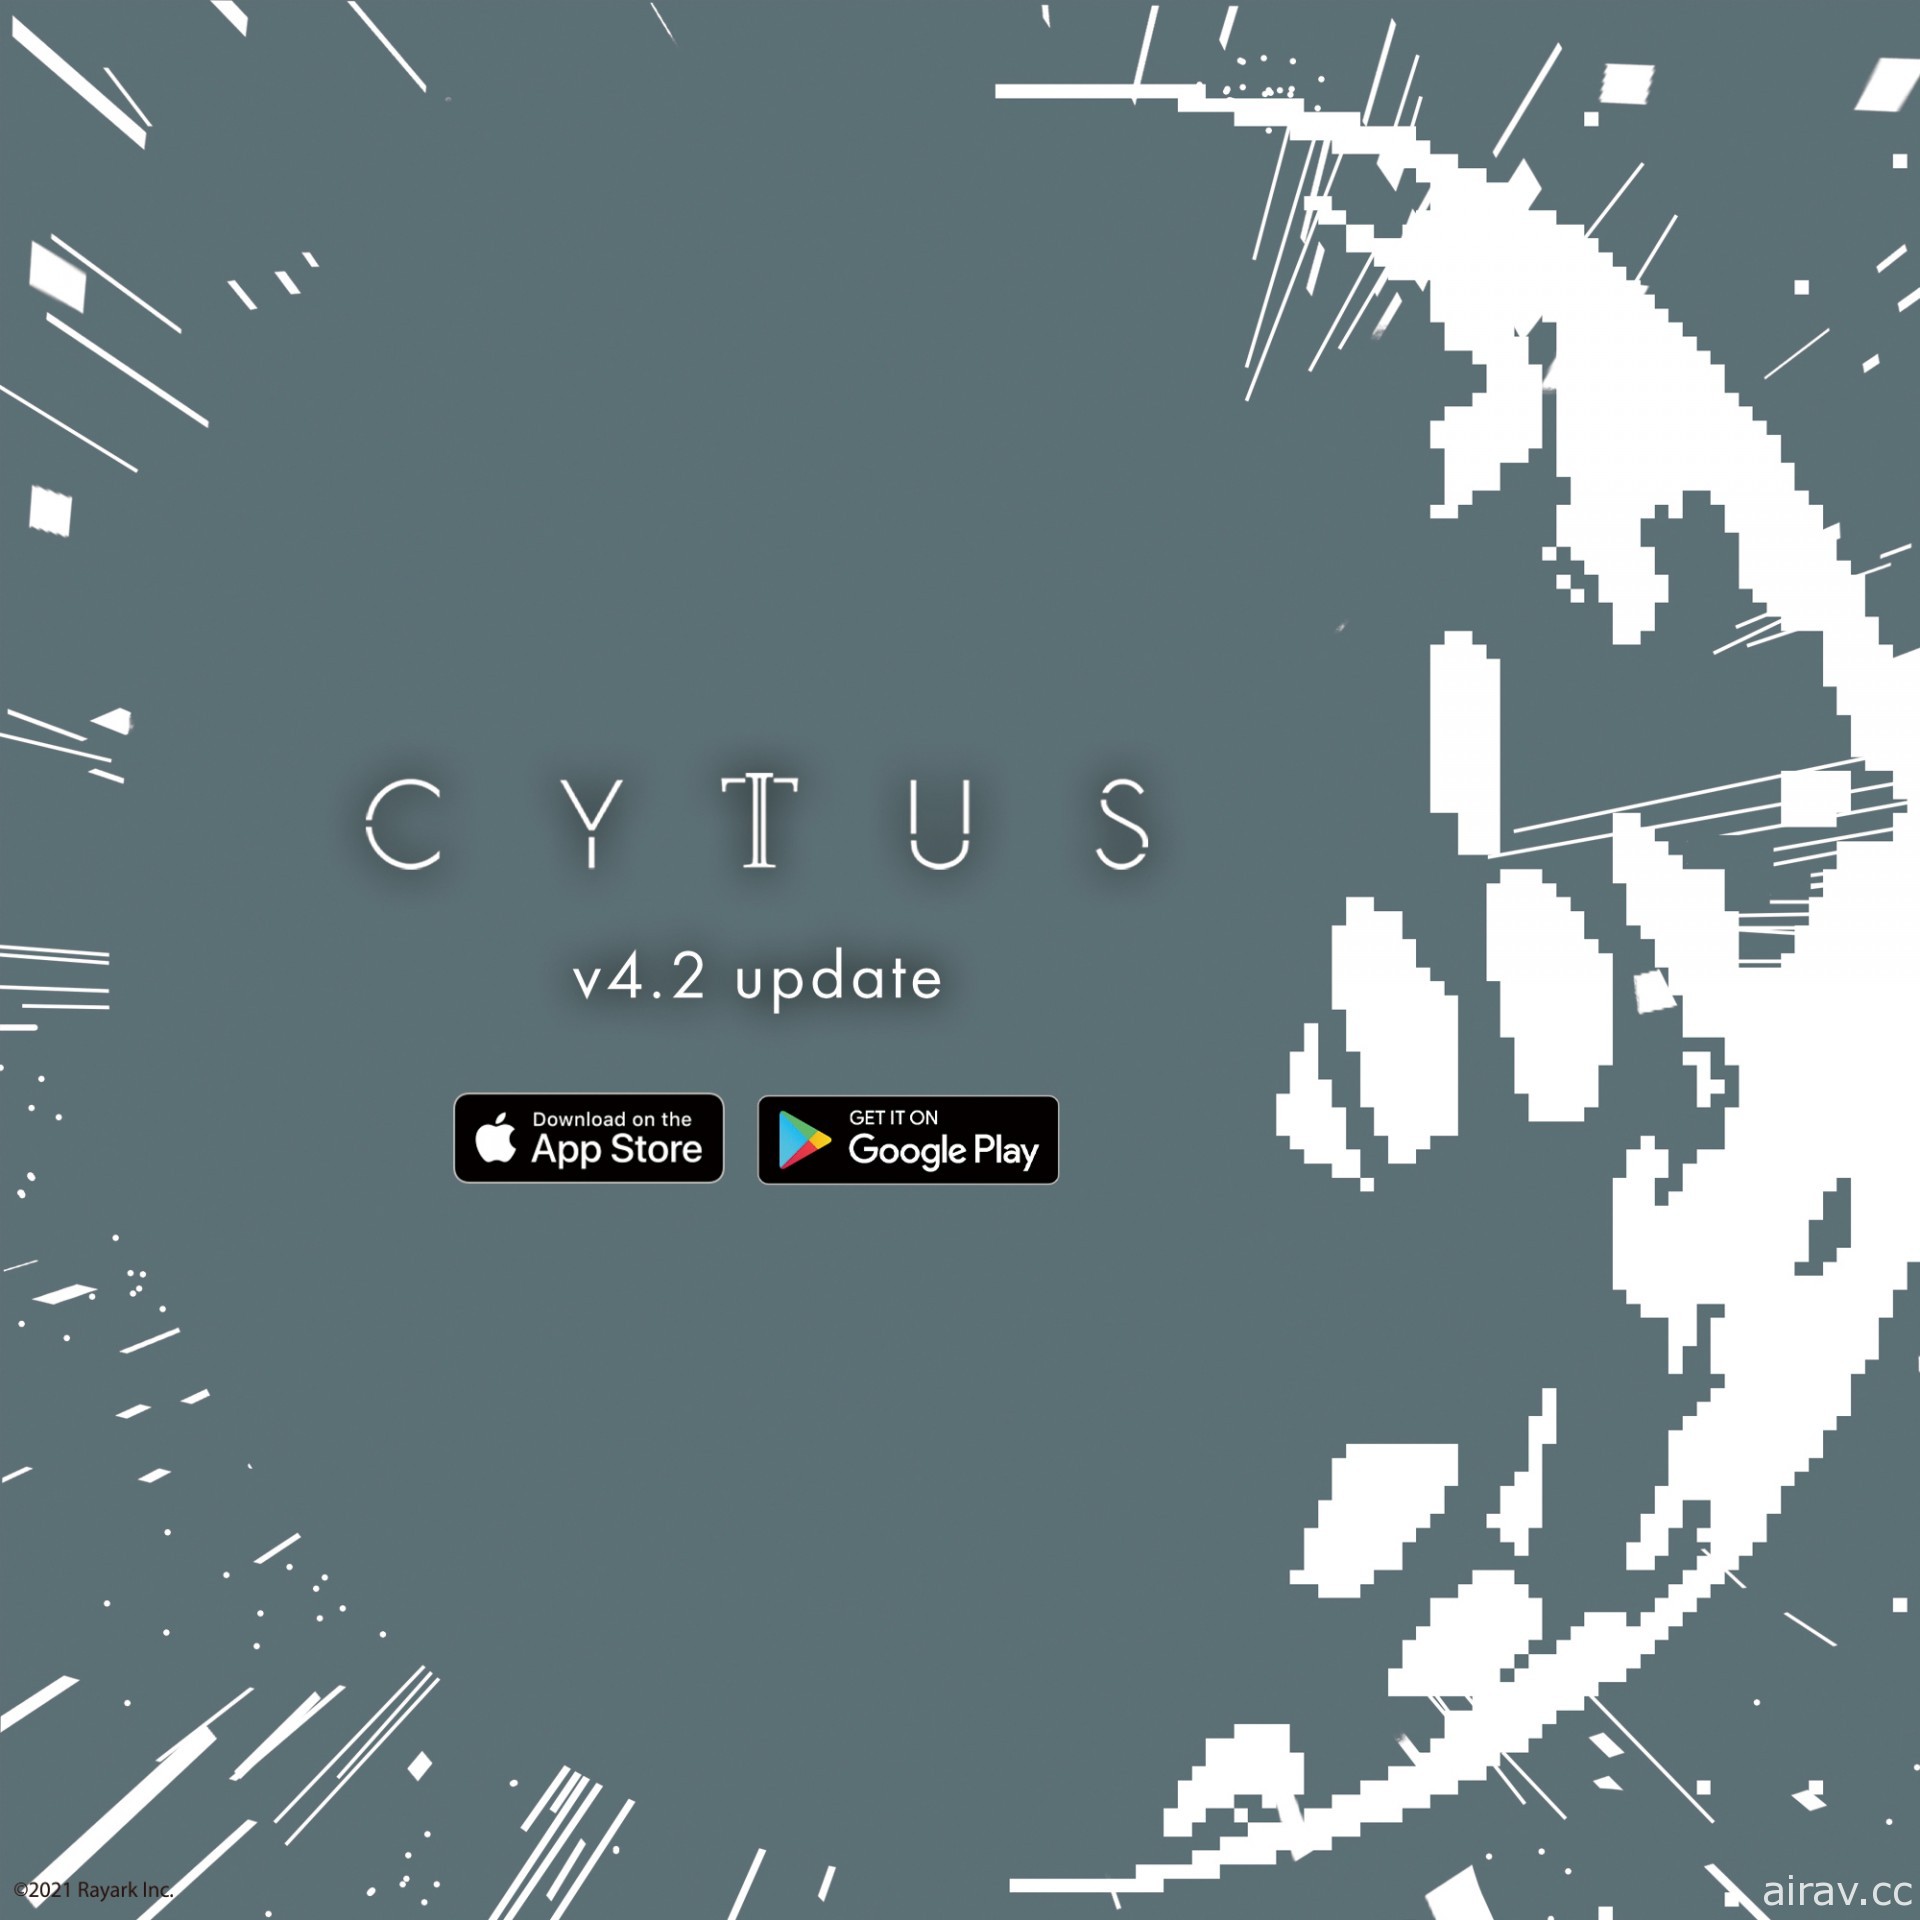 《Cytus II》 4.2 版本更新因技术问题导致 Android 装置玩家纪录继承失败 将提供补偿